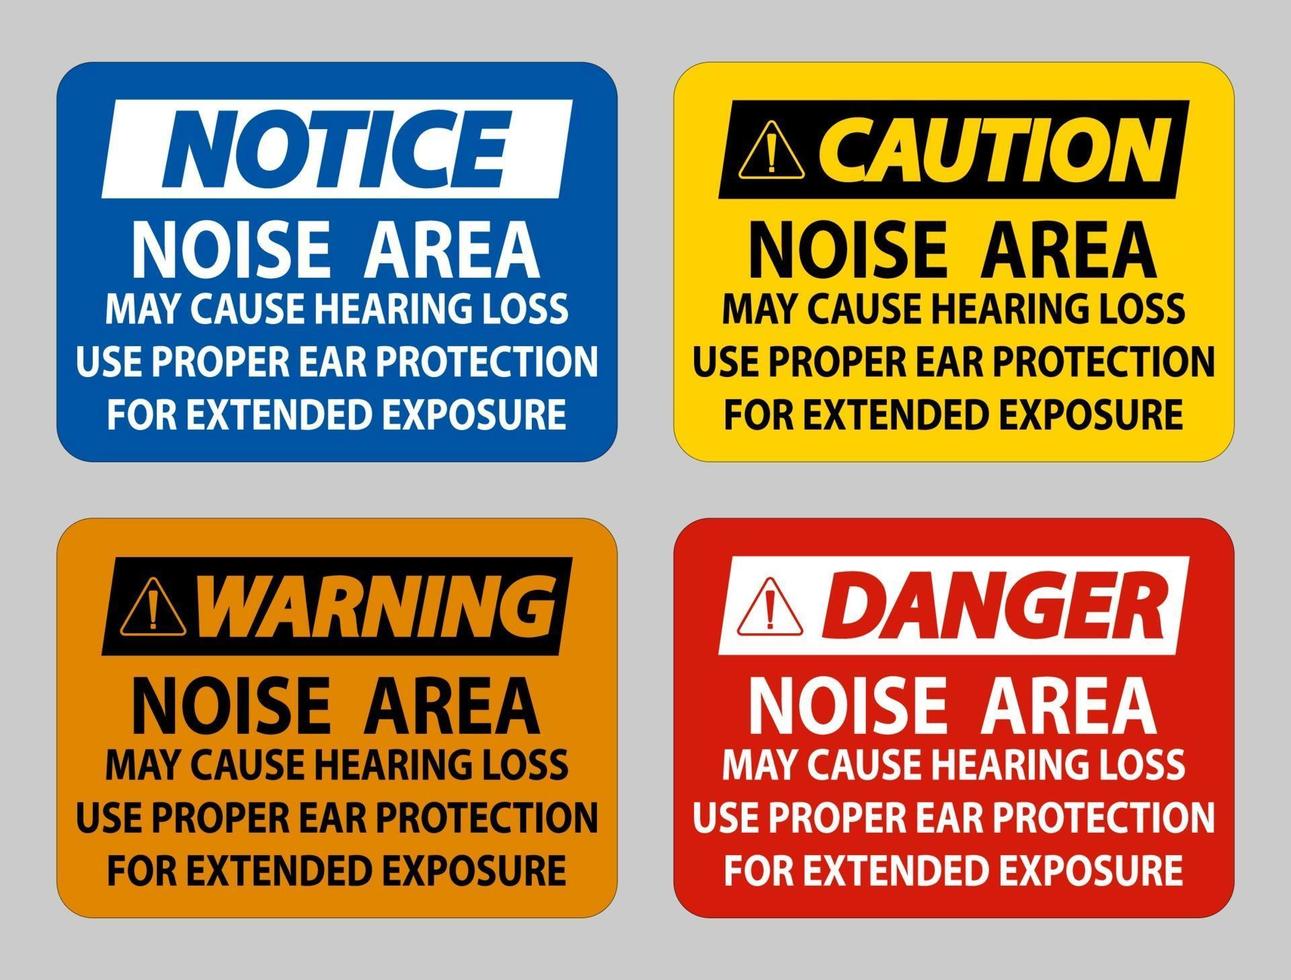 bullerområde kan orsaka hörselnedsättning, använd lämpligt hörselskydd för längre exponering vektor